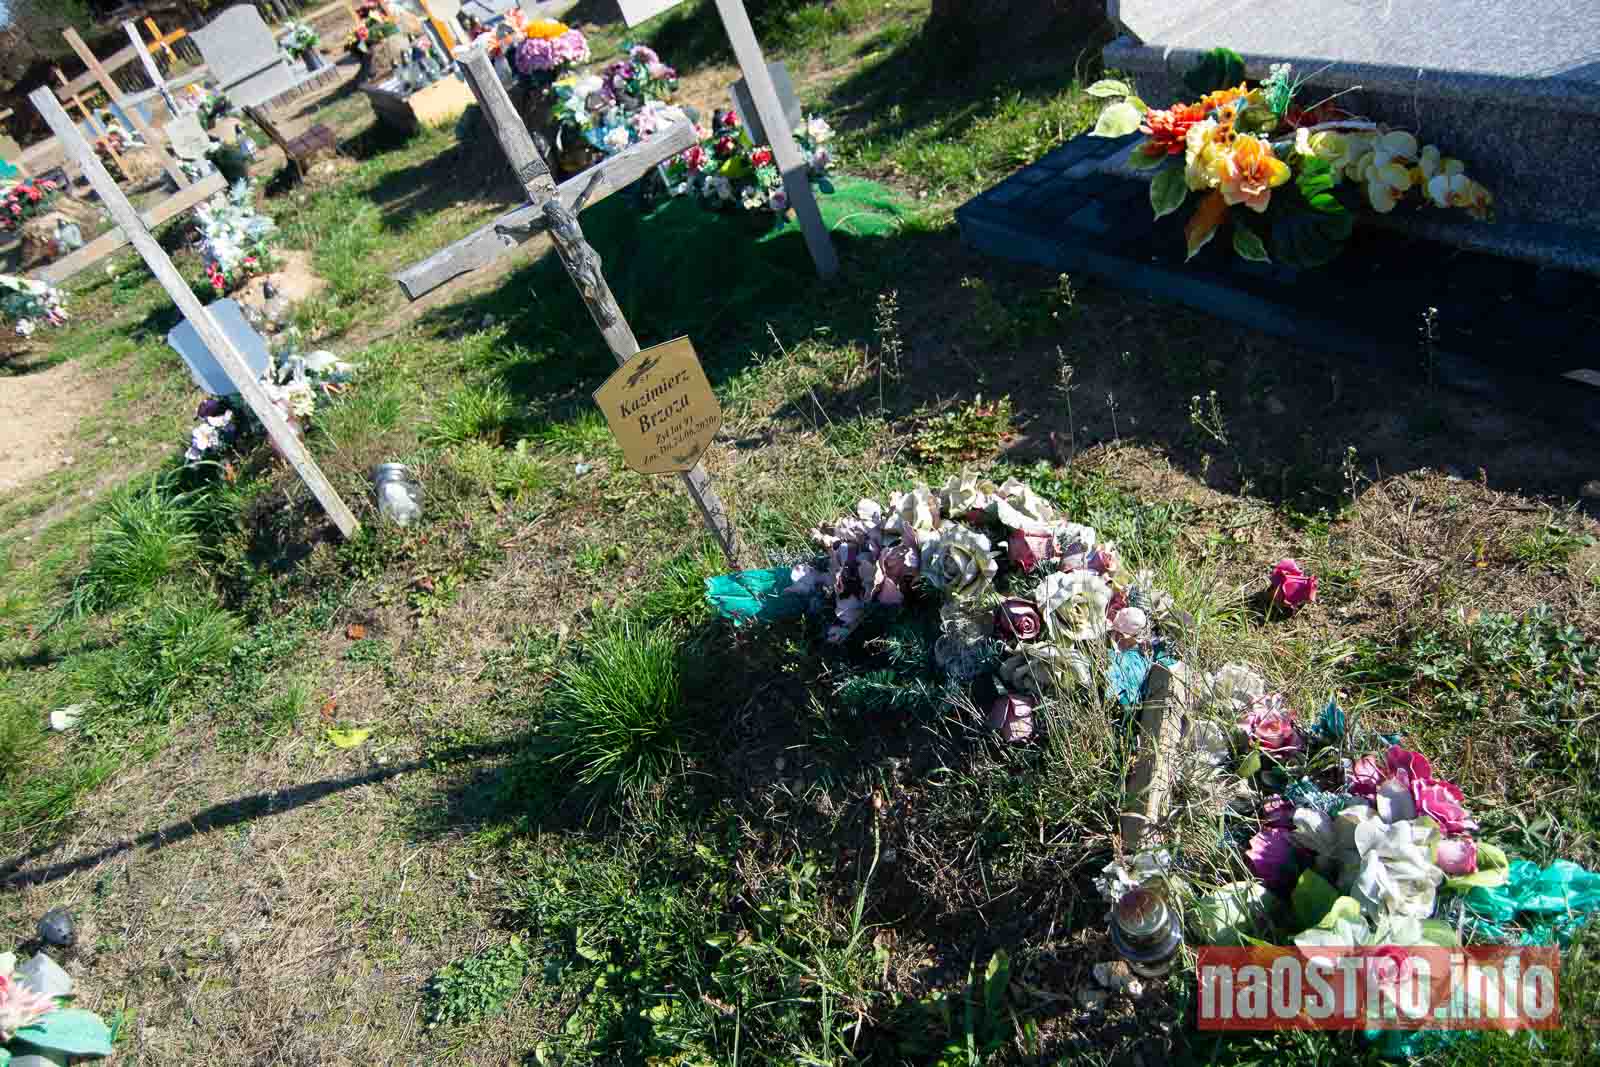 NaOSTROinfo MZK Sprzątanie grobów bezdomnych 2022-12